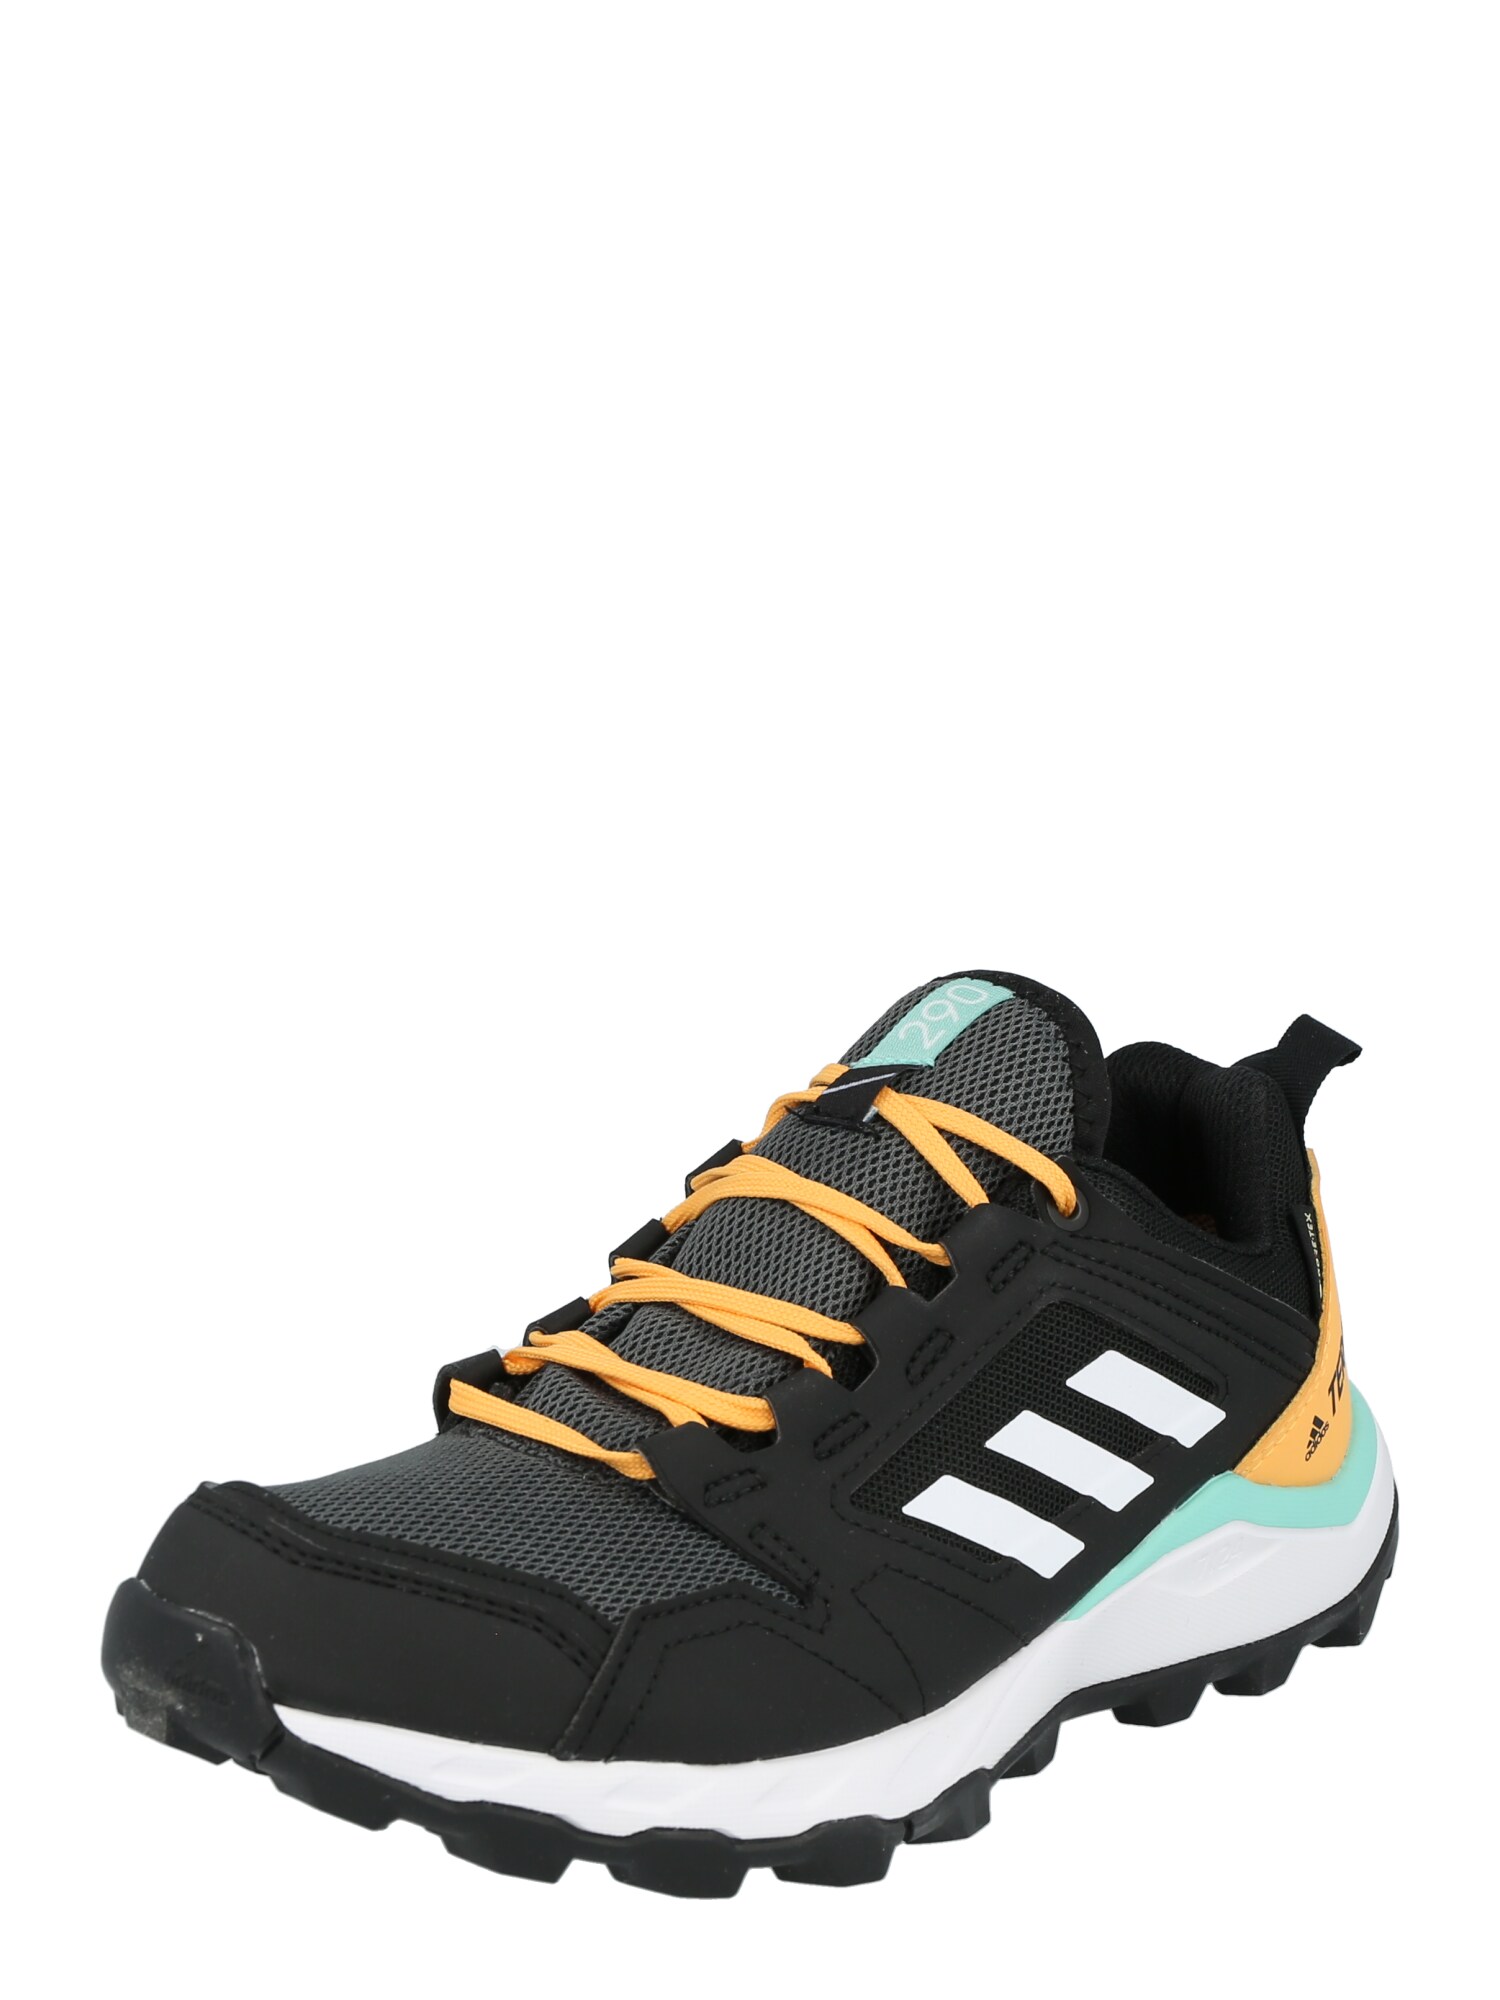 adidas Terrex Bėgimo batai 'Agravic' juoda / balta / nefrito spalva / šviesiai oranžinė